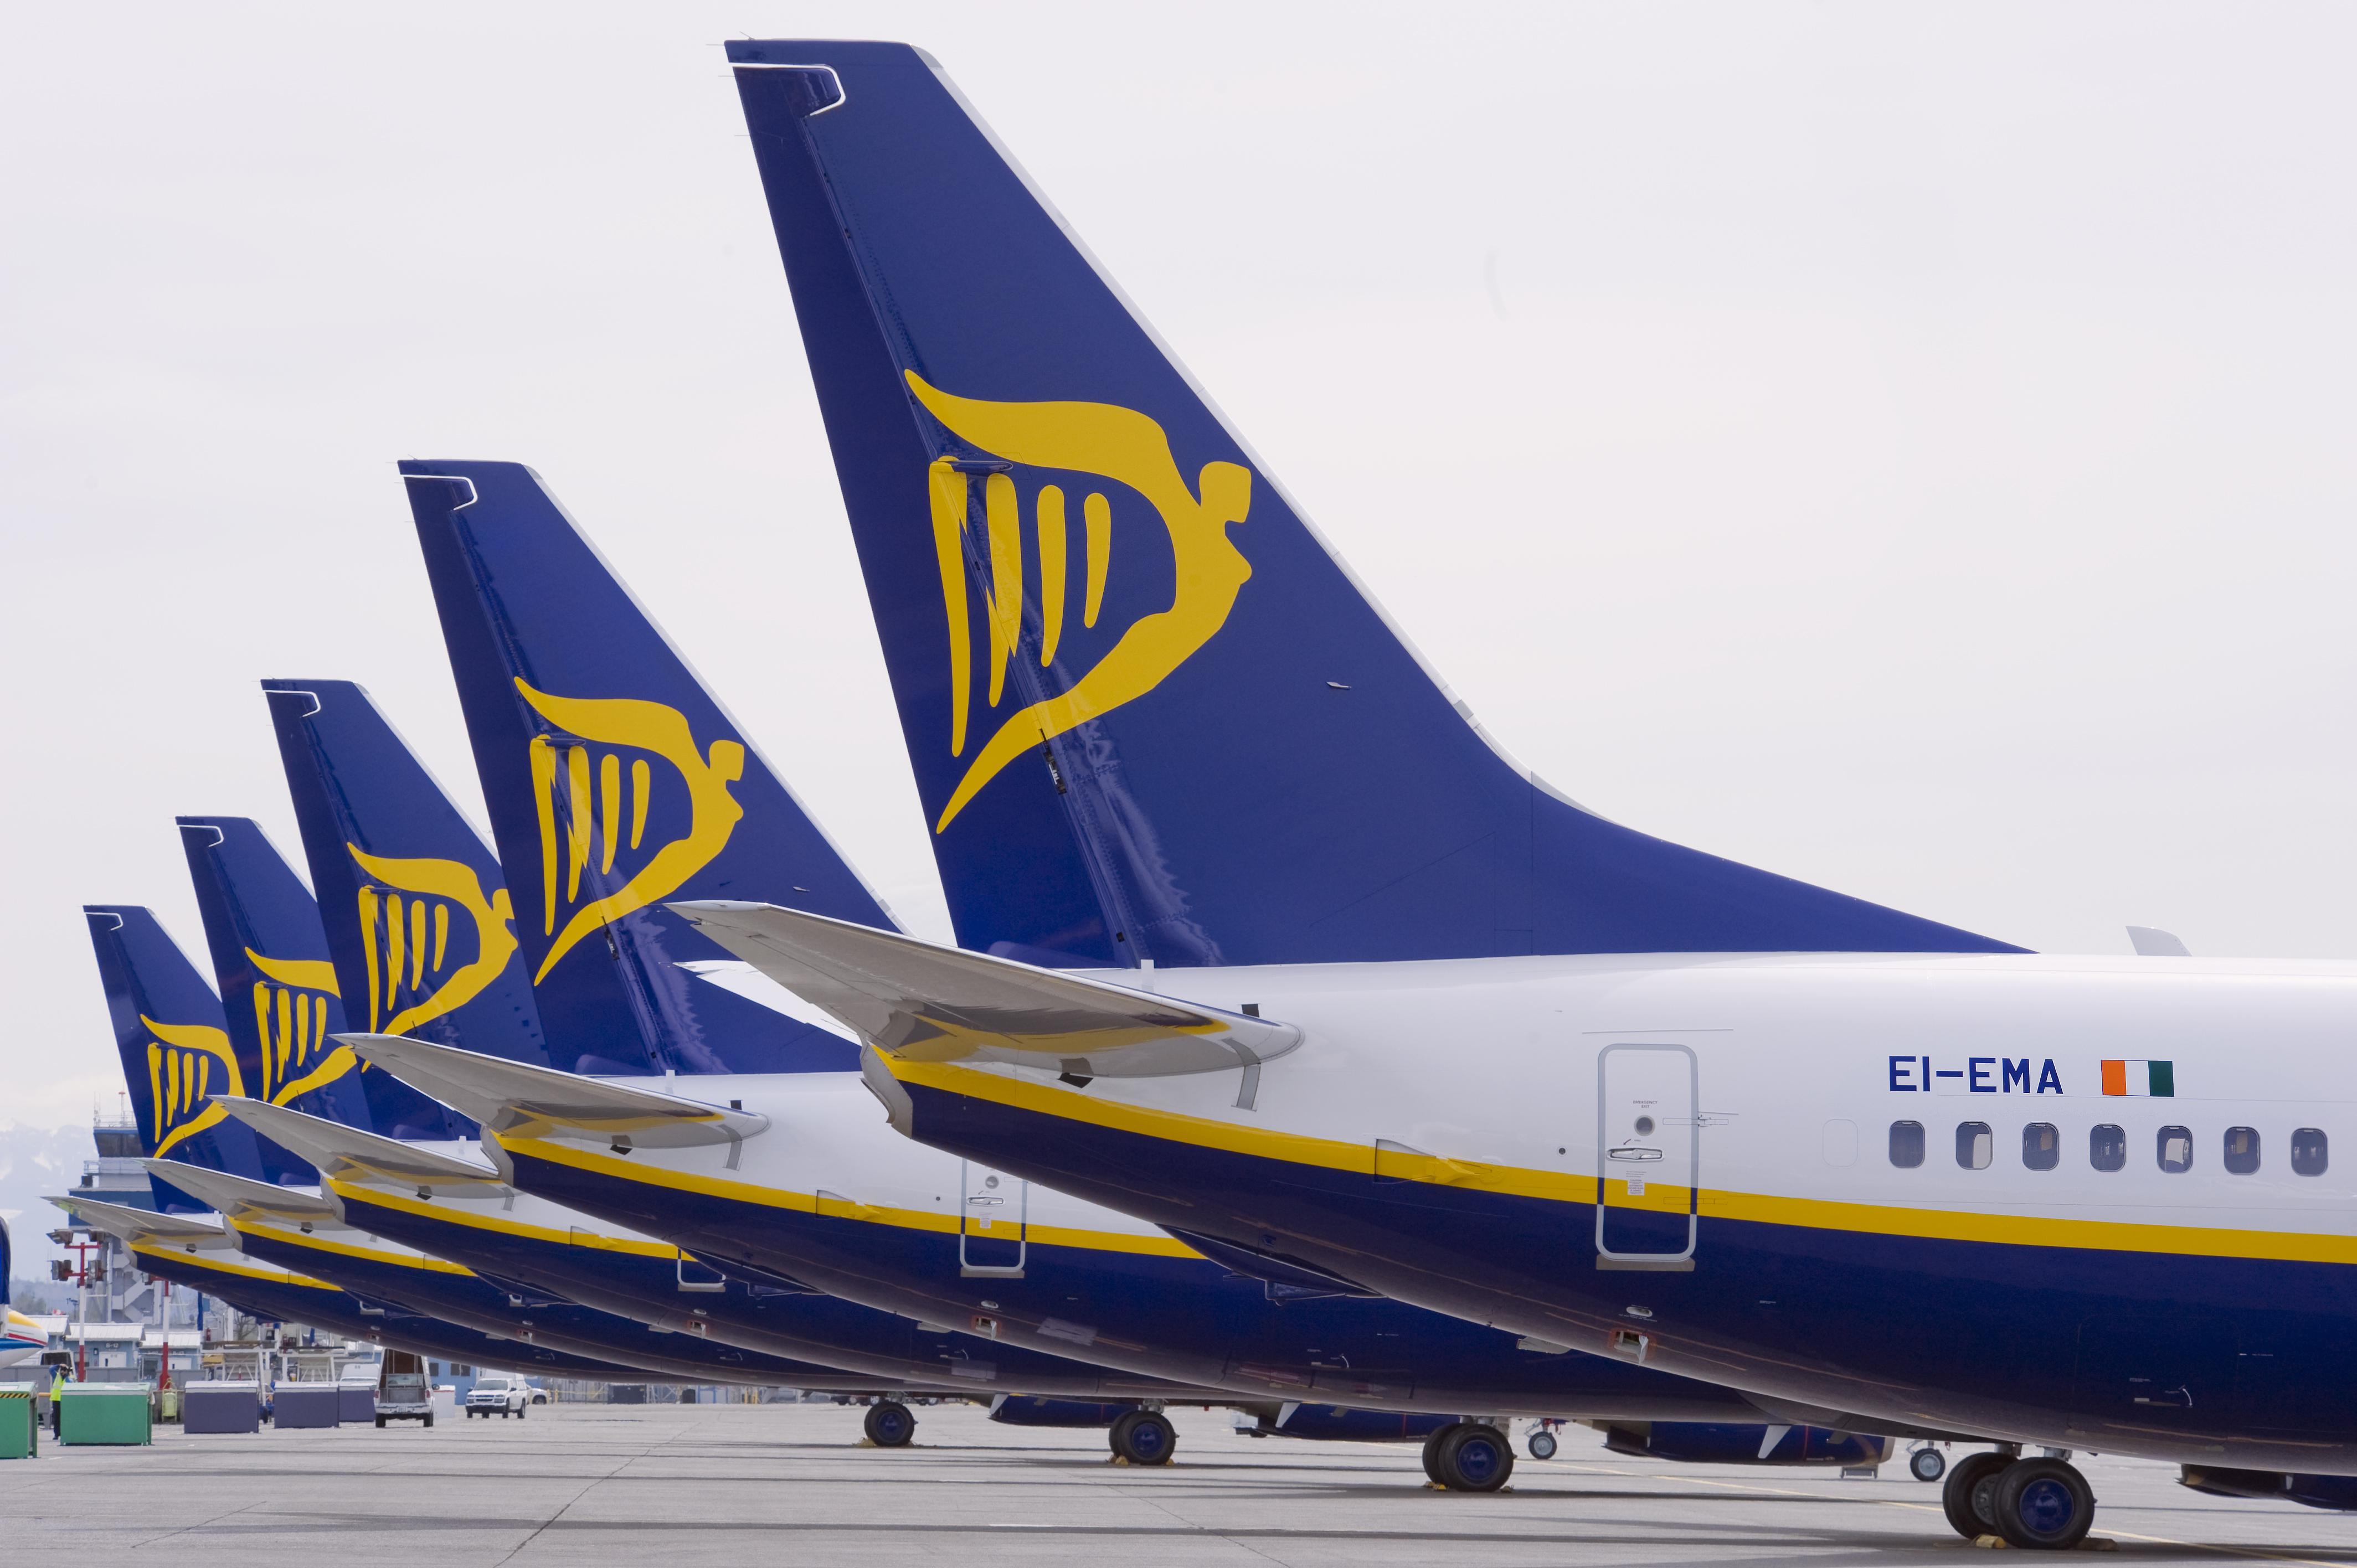 Ryanair lancia due nuove rotte che collegano Italia e Ucraina per l'estate 2021: Napoli con Kiev Boryspil (tre frequenze settimanali) e Pisa con Leopoli